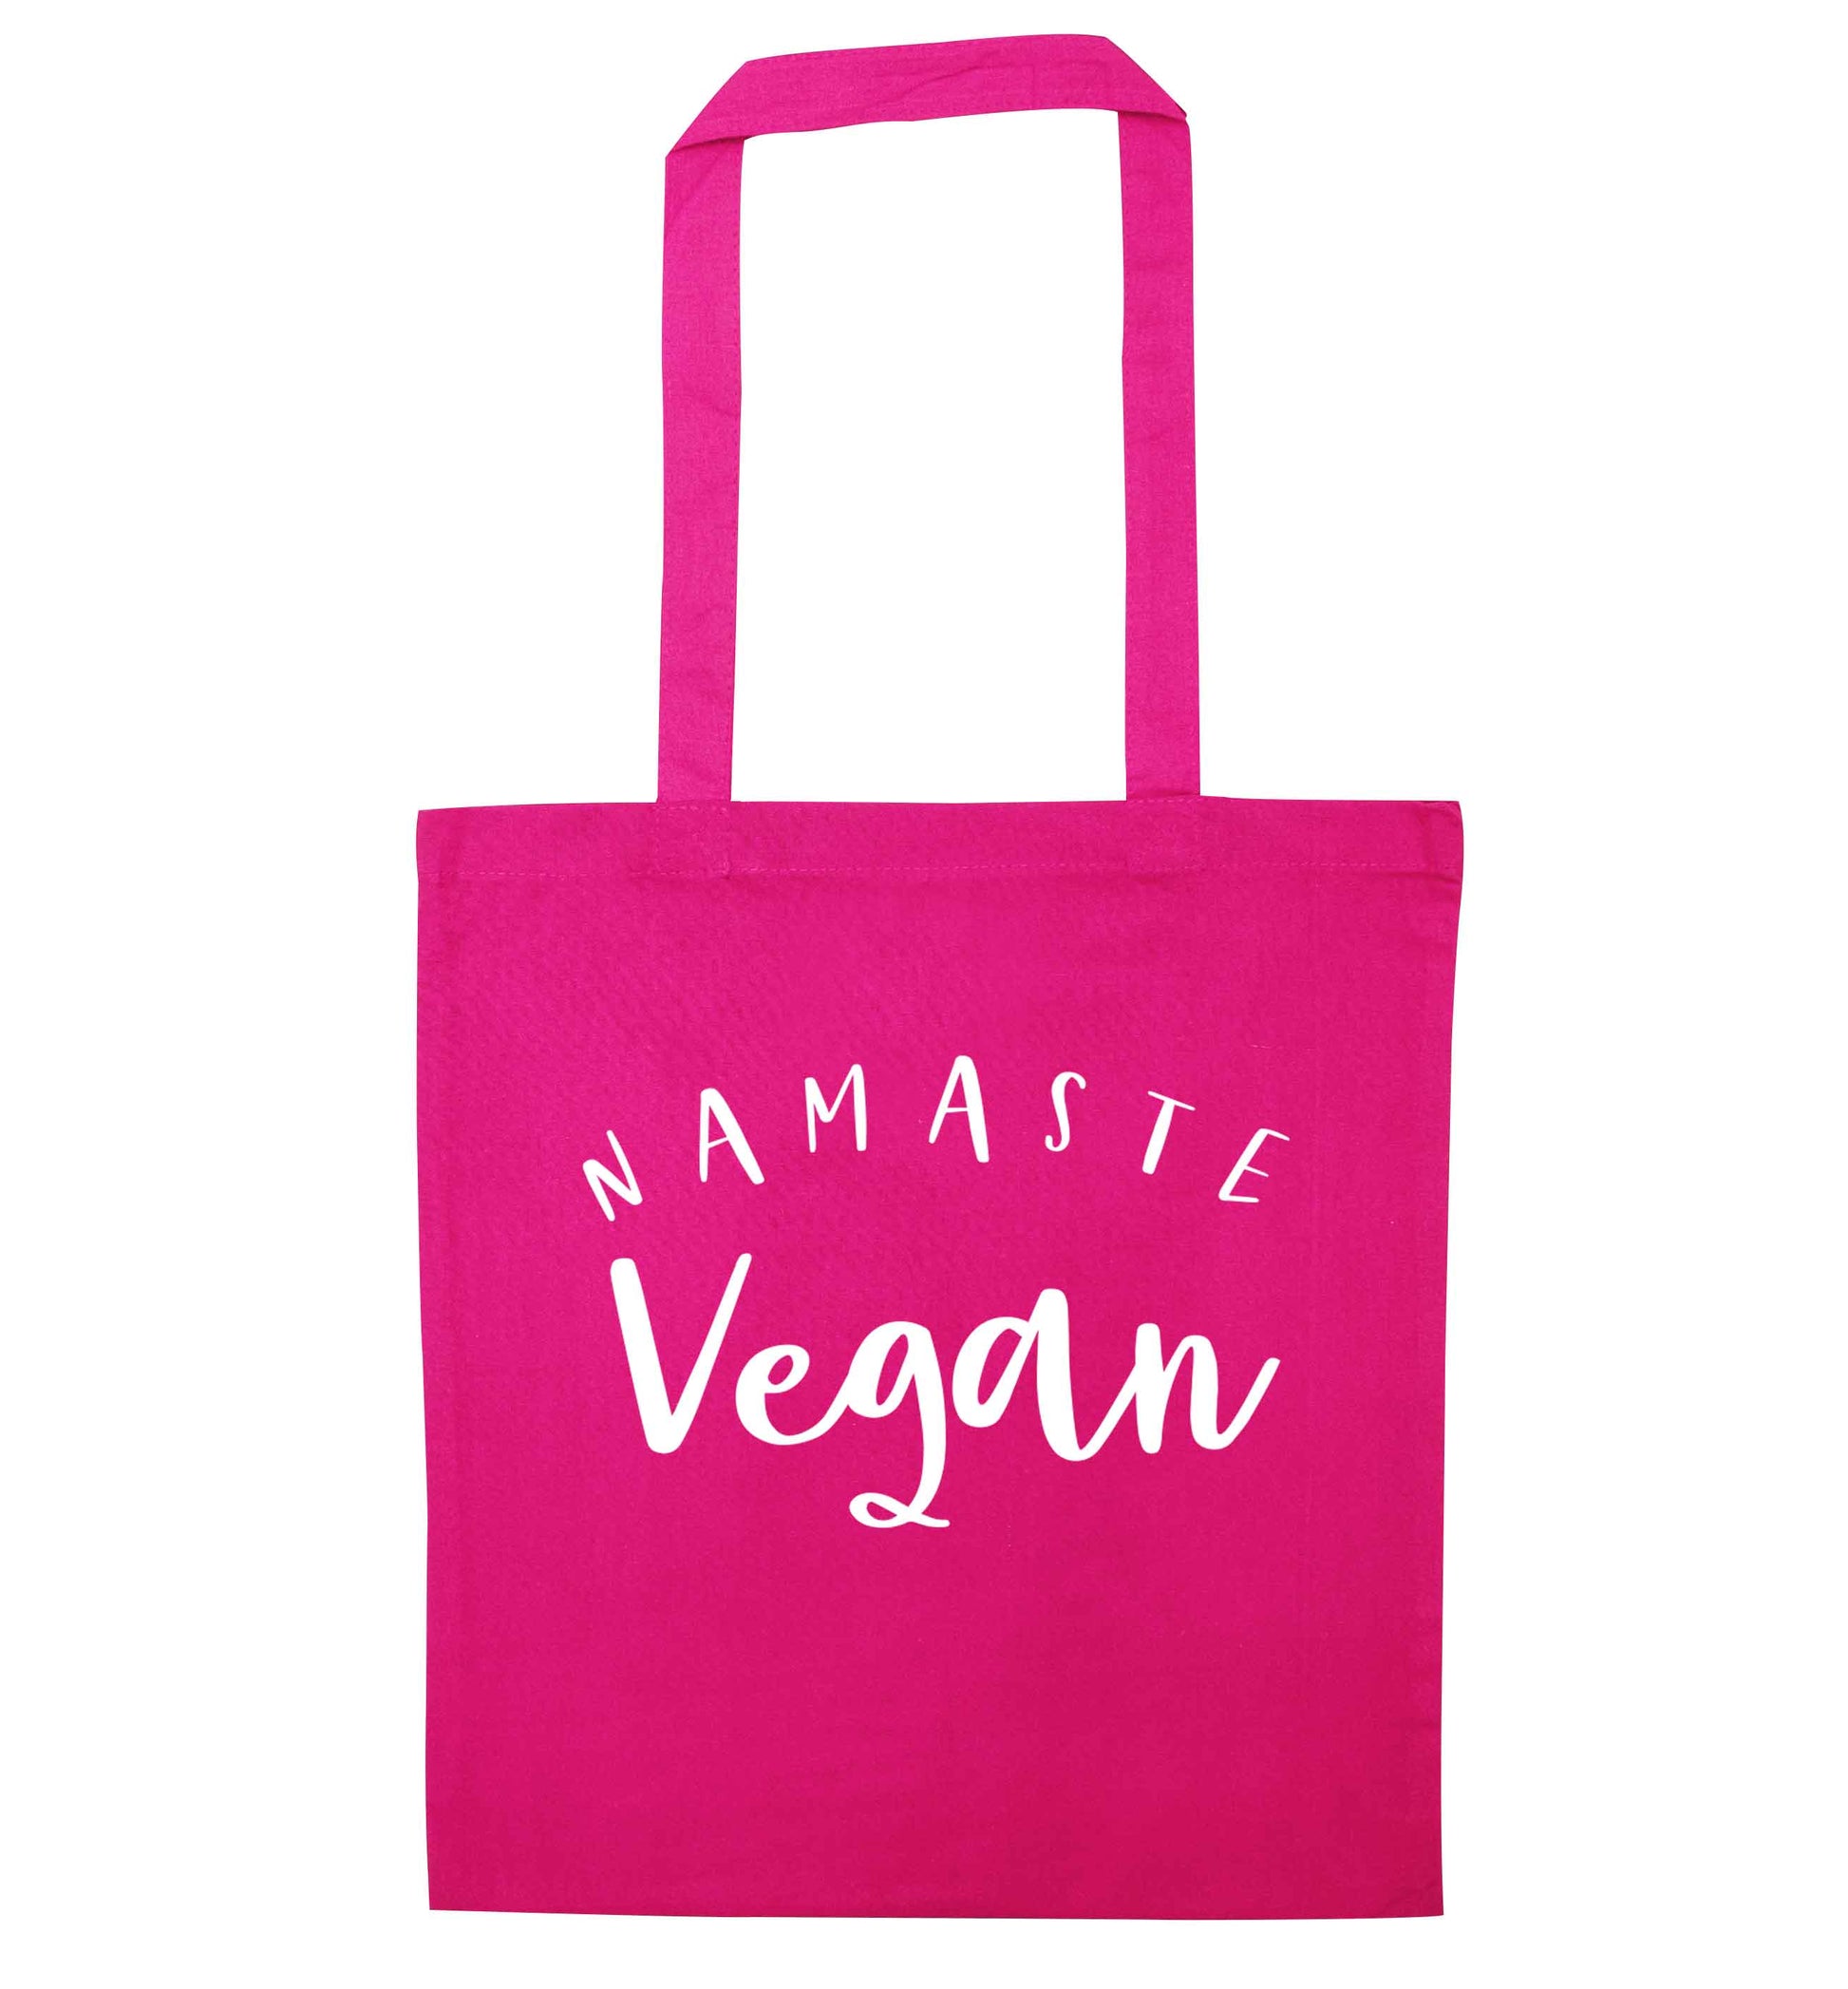 Namaste vegan pink tote bag